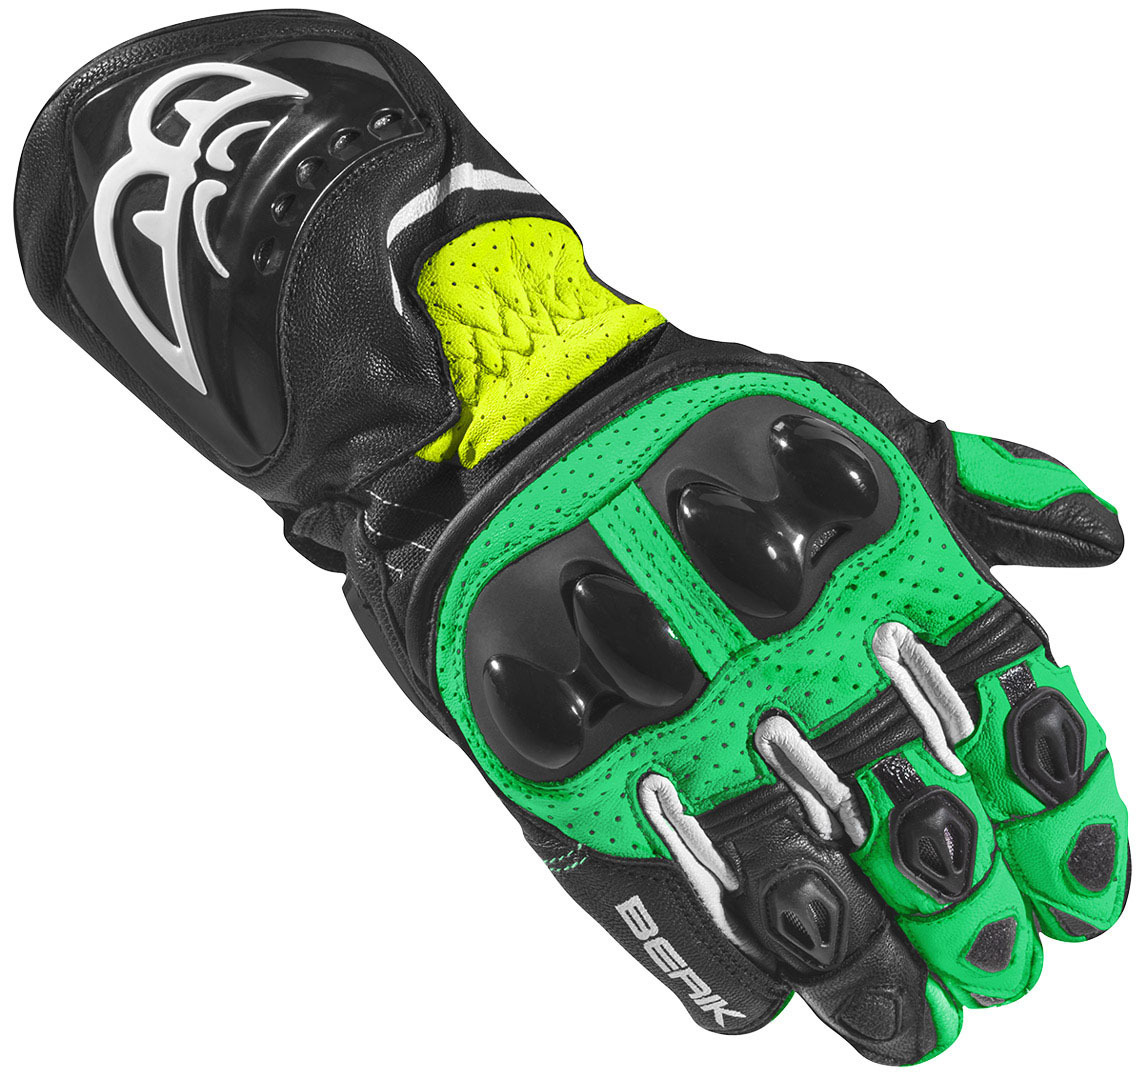 Мотоциклетные перчатки Berik Spa Evo с длинными манжетами, черный/зеленый мотоциклетные перчатки spa evo berik черный желтый